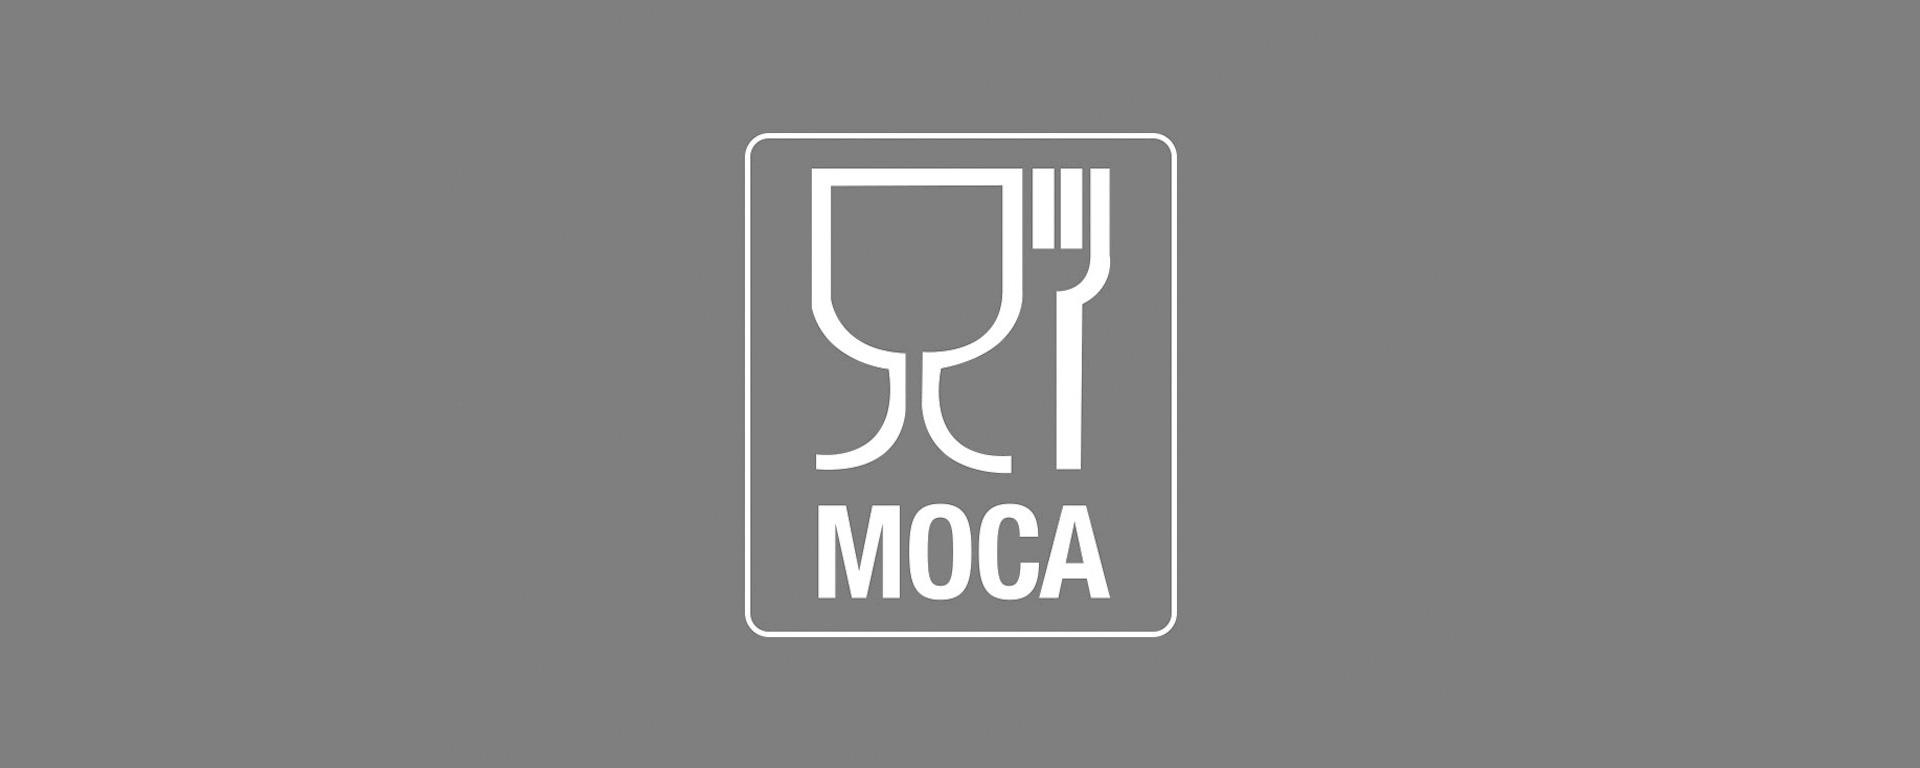 Conformità ai requisiti MOCA